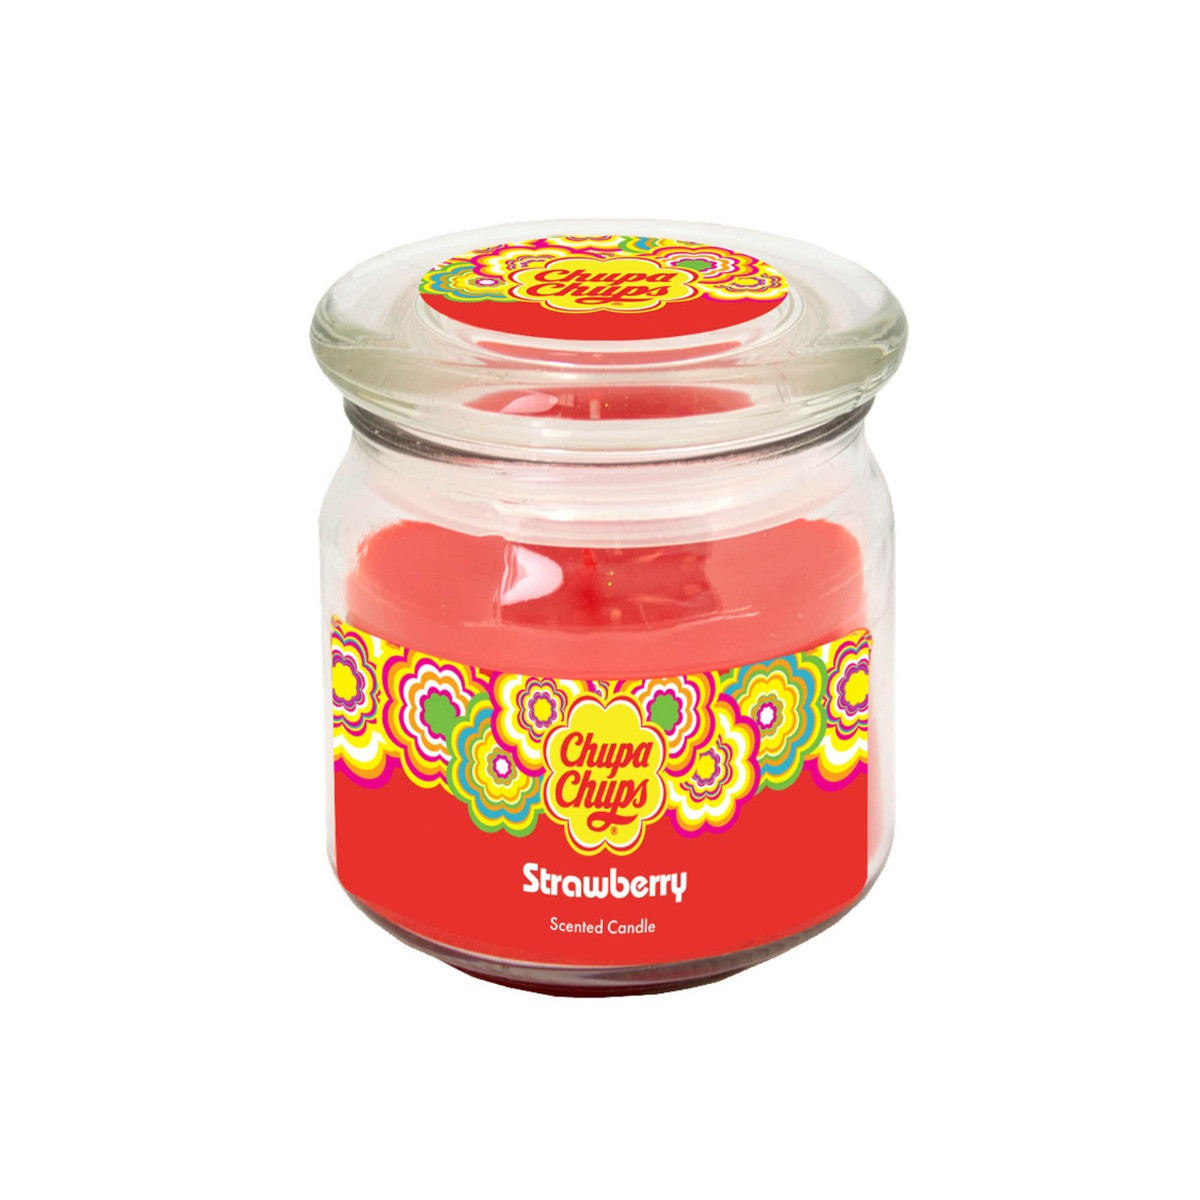 Chupa Chups 8oz Medium Jar Candle - Strawberry>